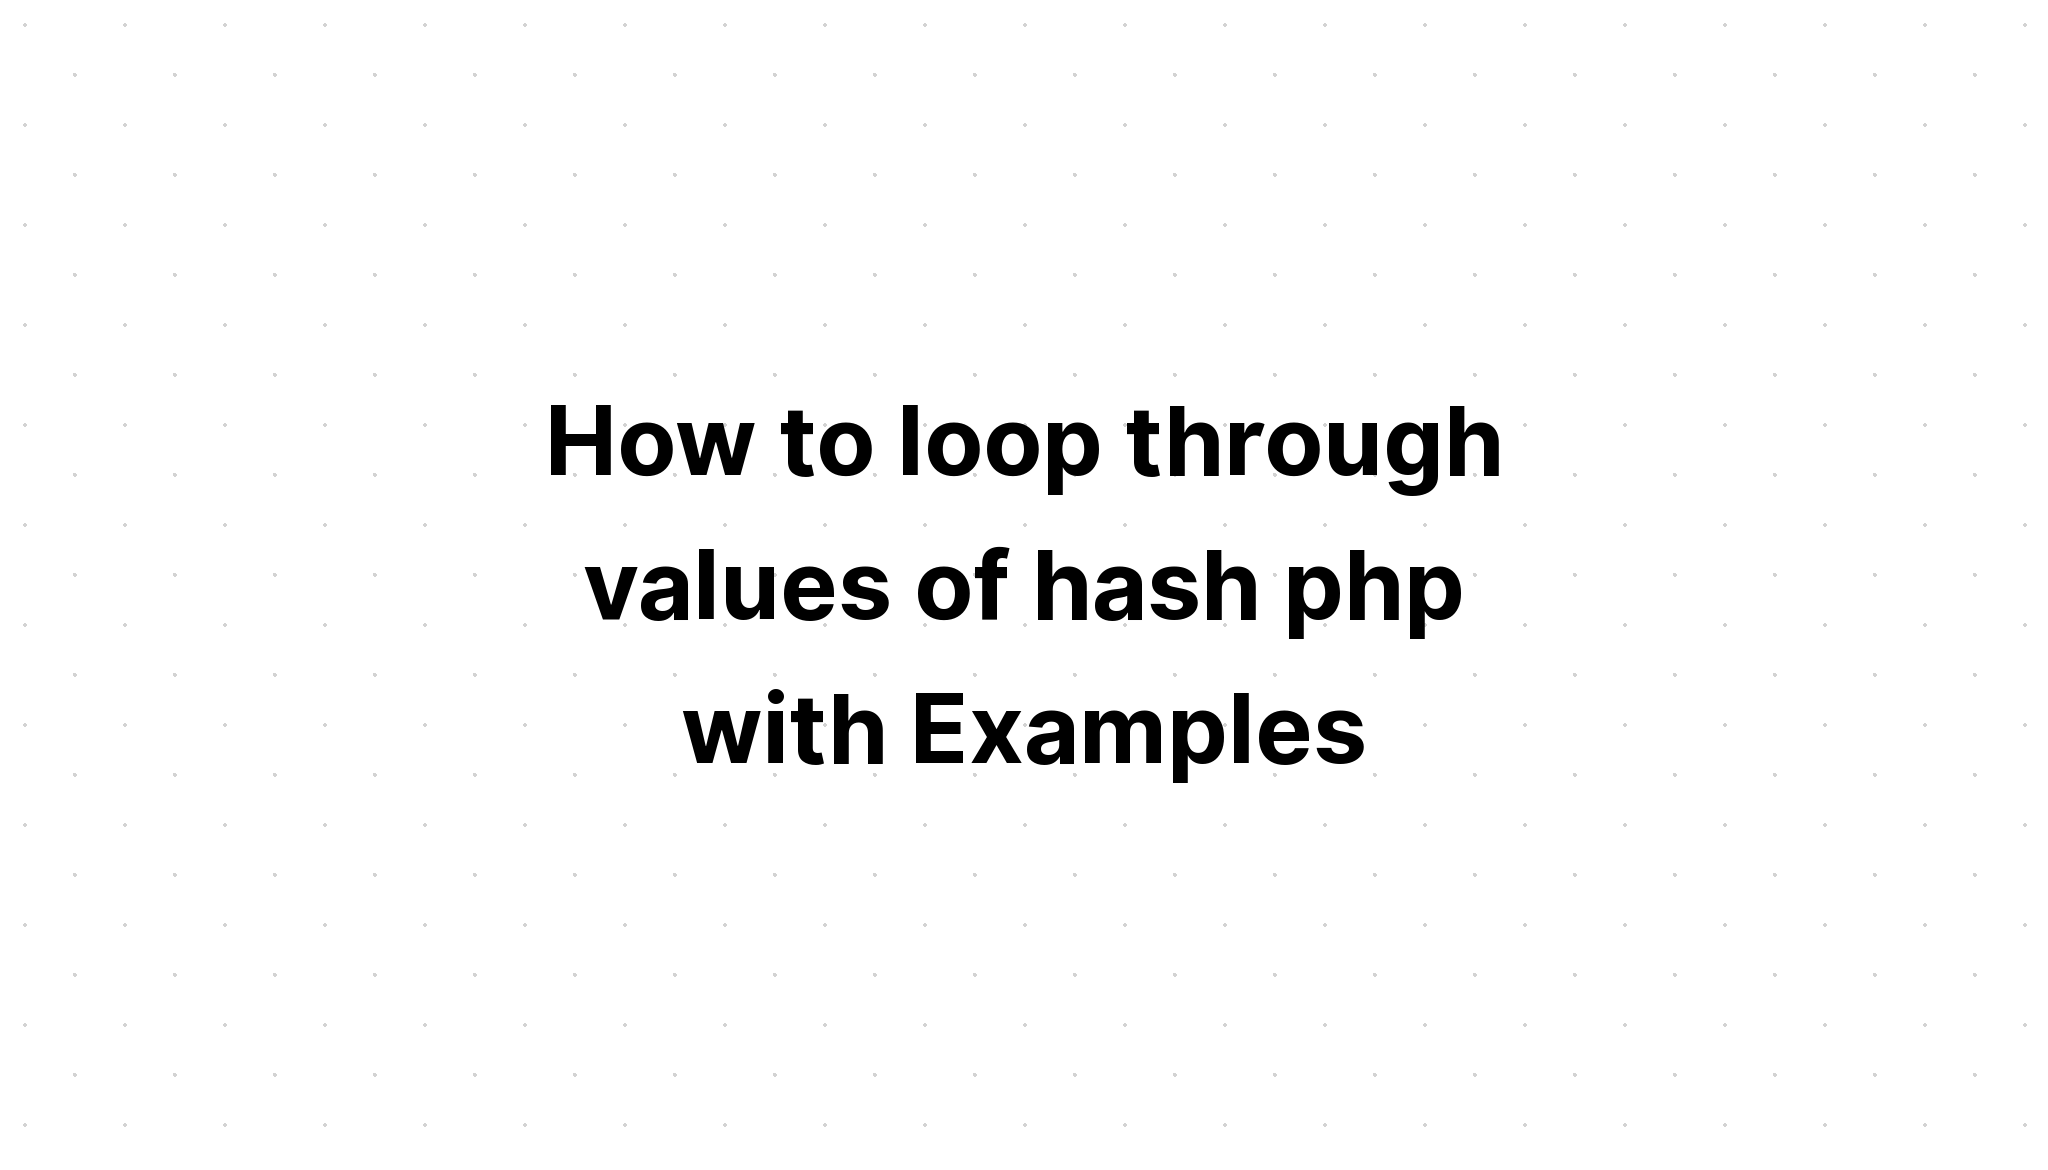 Cara mengulang nilai hash php dengan Contoh